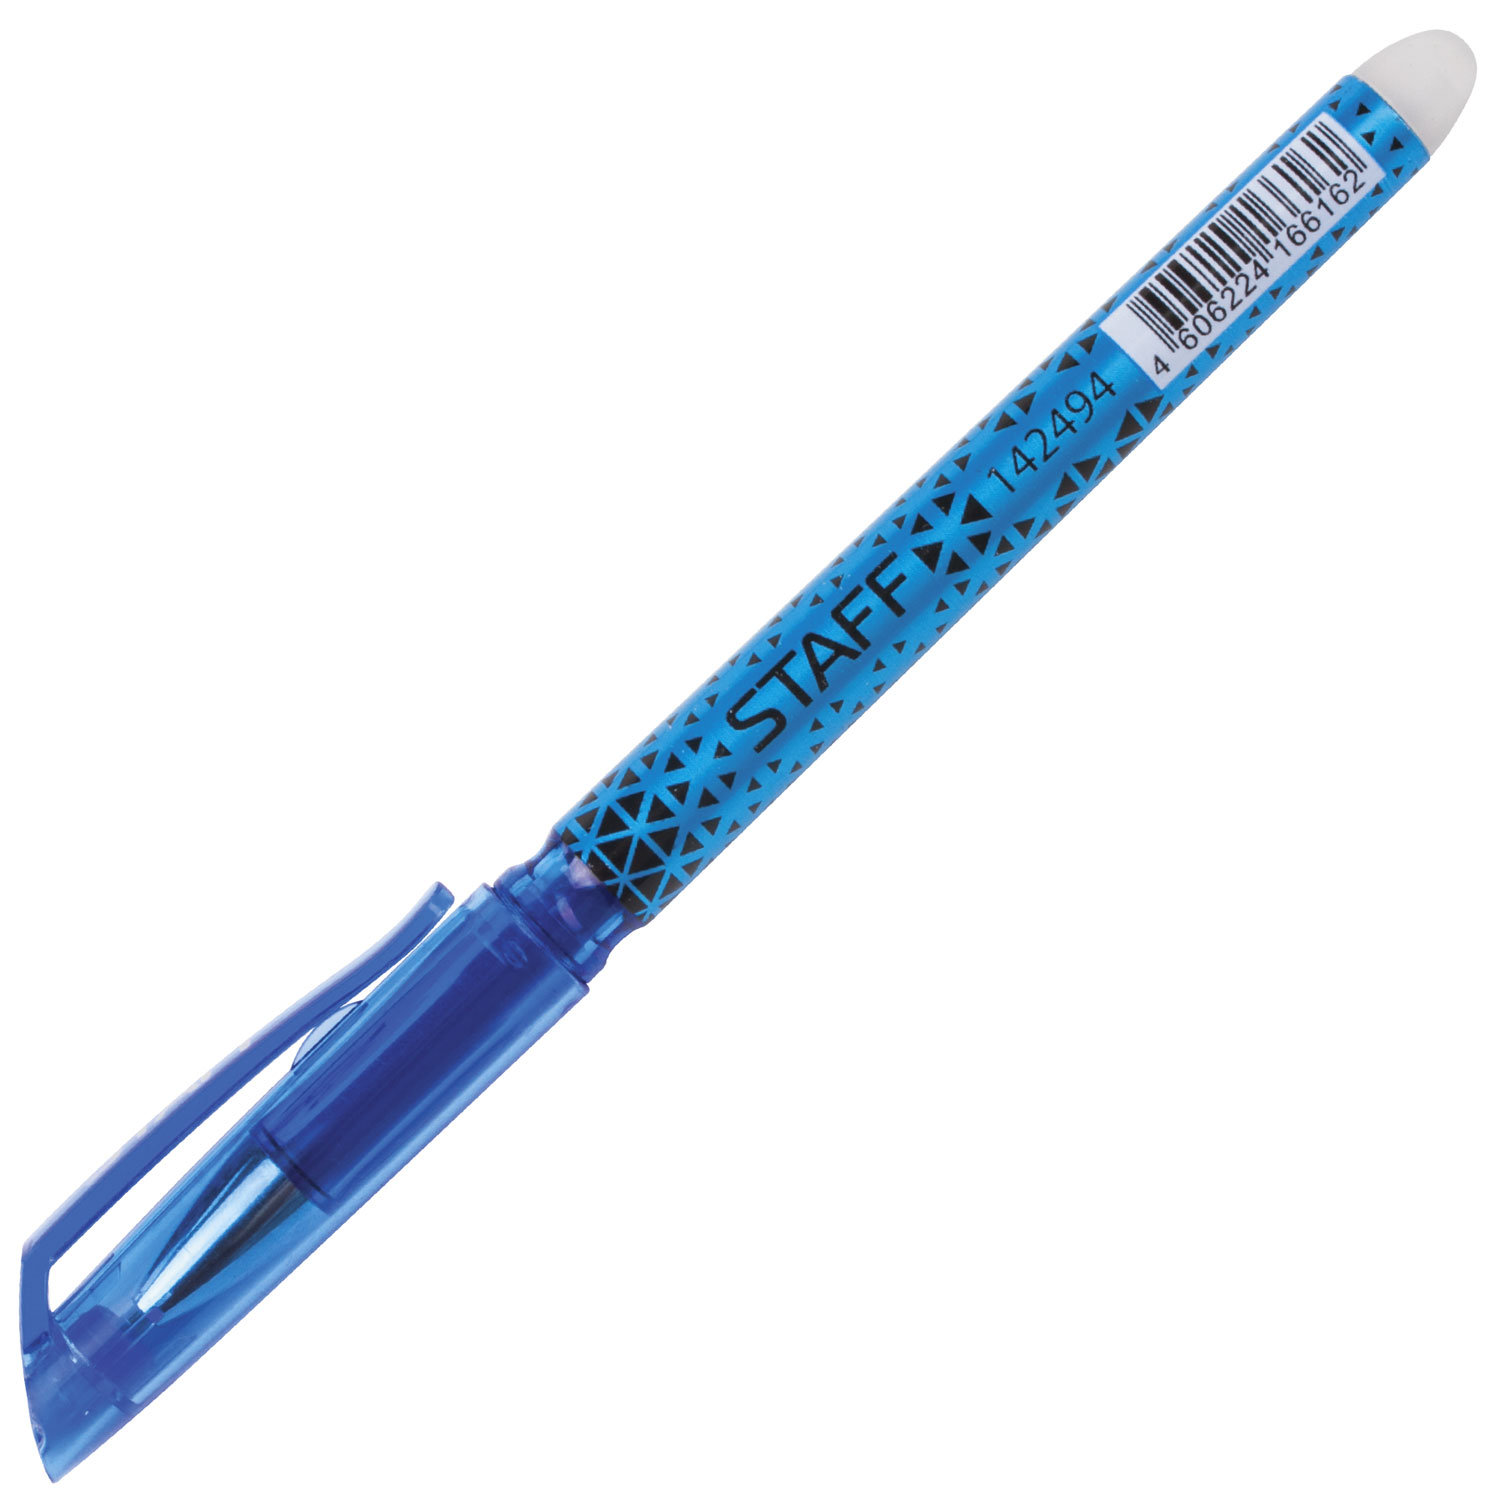 Ручка синяя красивая. Ручка staff Erasable Gel Pen. 40606224300382. Staff ручка черная гелевая. Ручка шариковая синяя (staff 142397). Ручка гелевая стафф синяя стираемая  артикул 142494/шт.